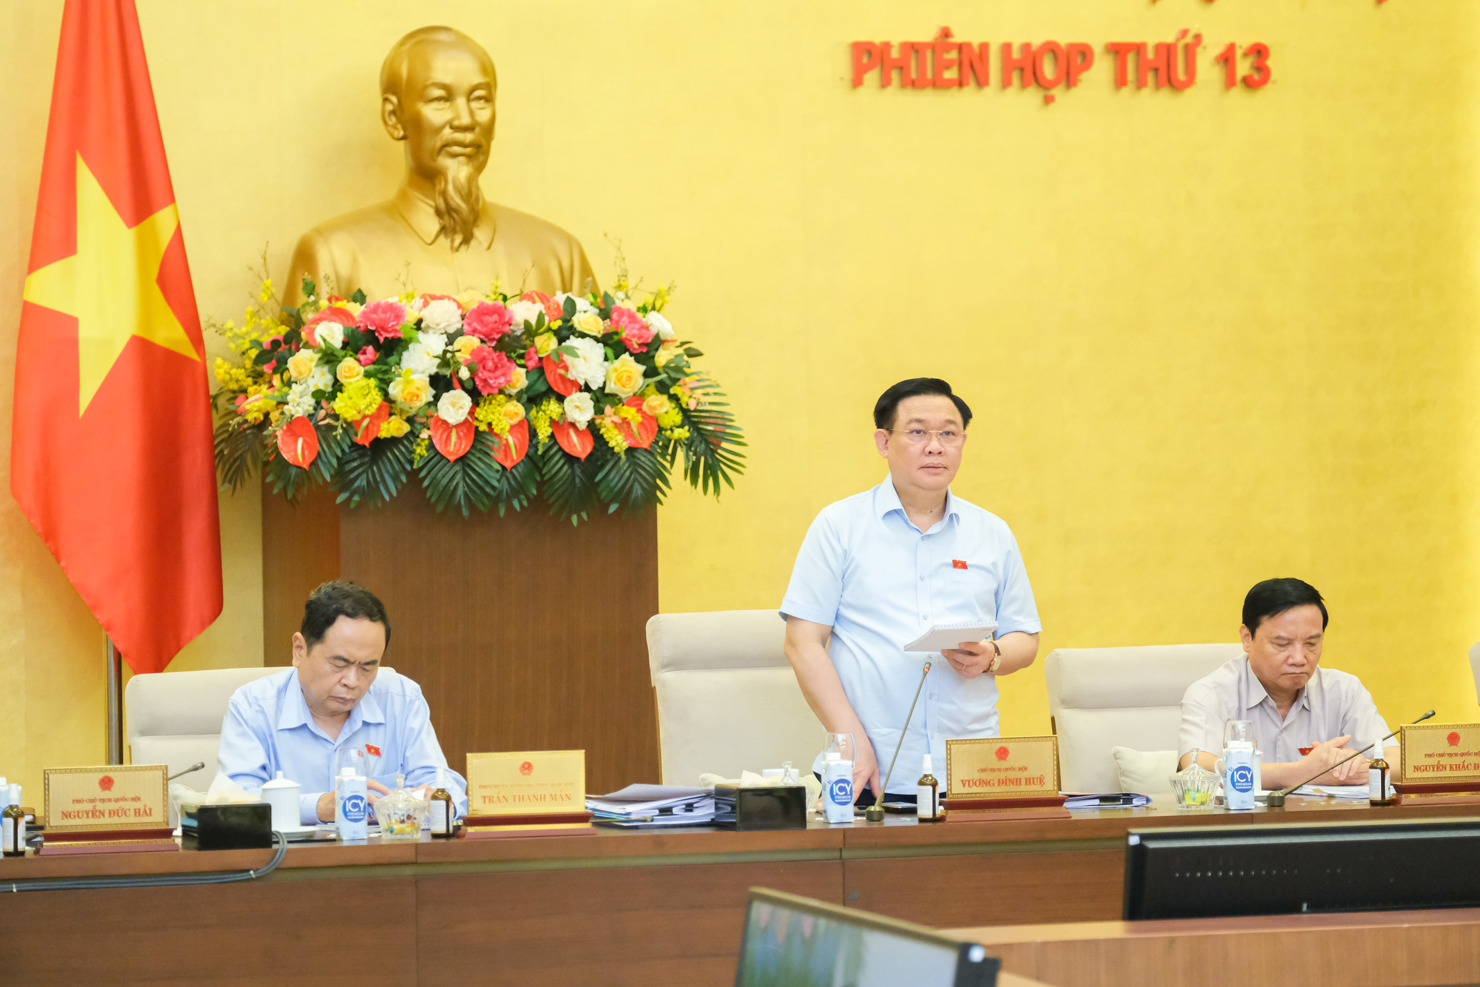 Chủ tịch Quốc hội Vương Đình Huệ phát biểu bế mạc Phiên họp thứ 13 của Ủy ban Thường vụ Quốc hội.